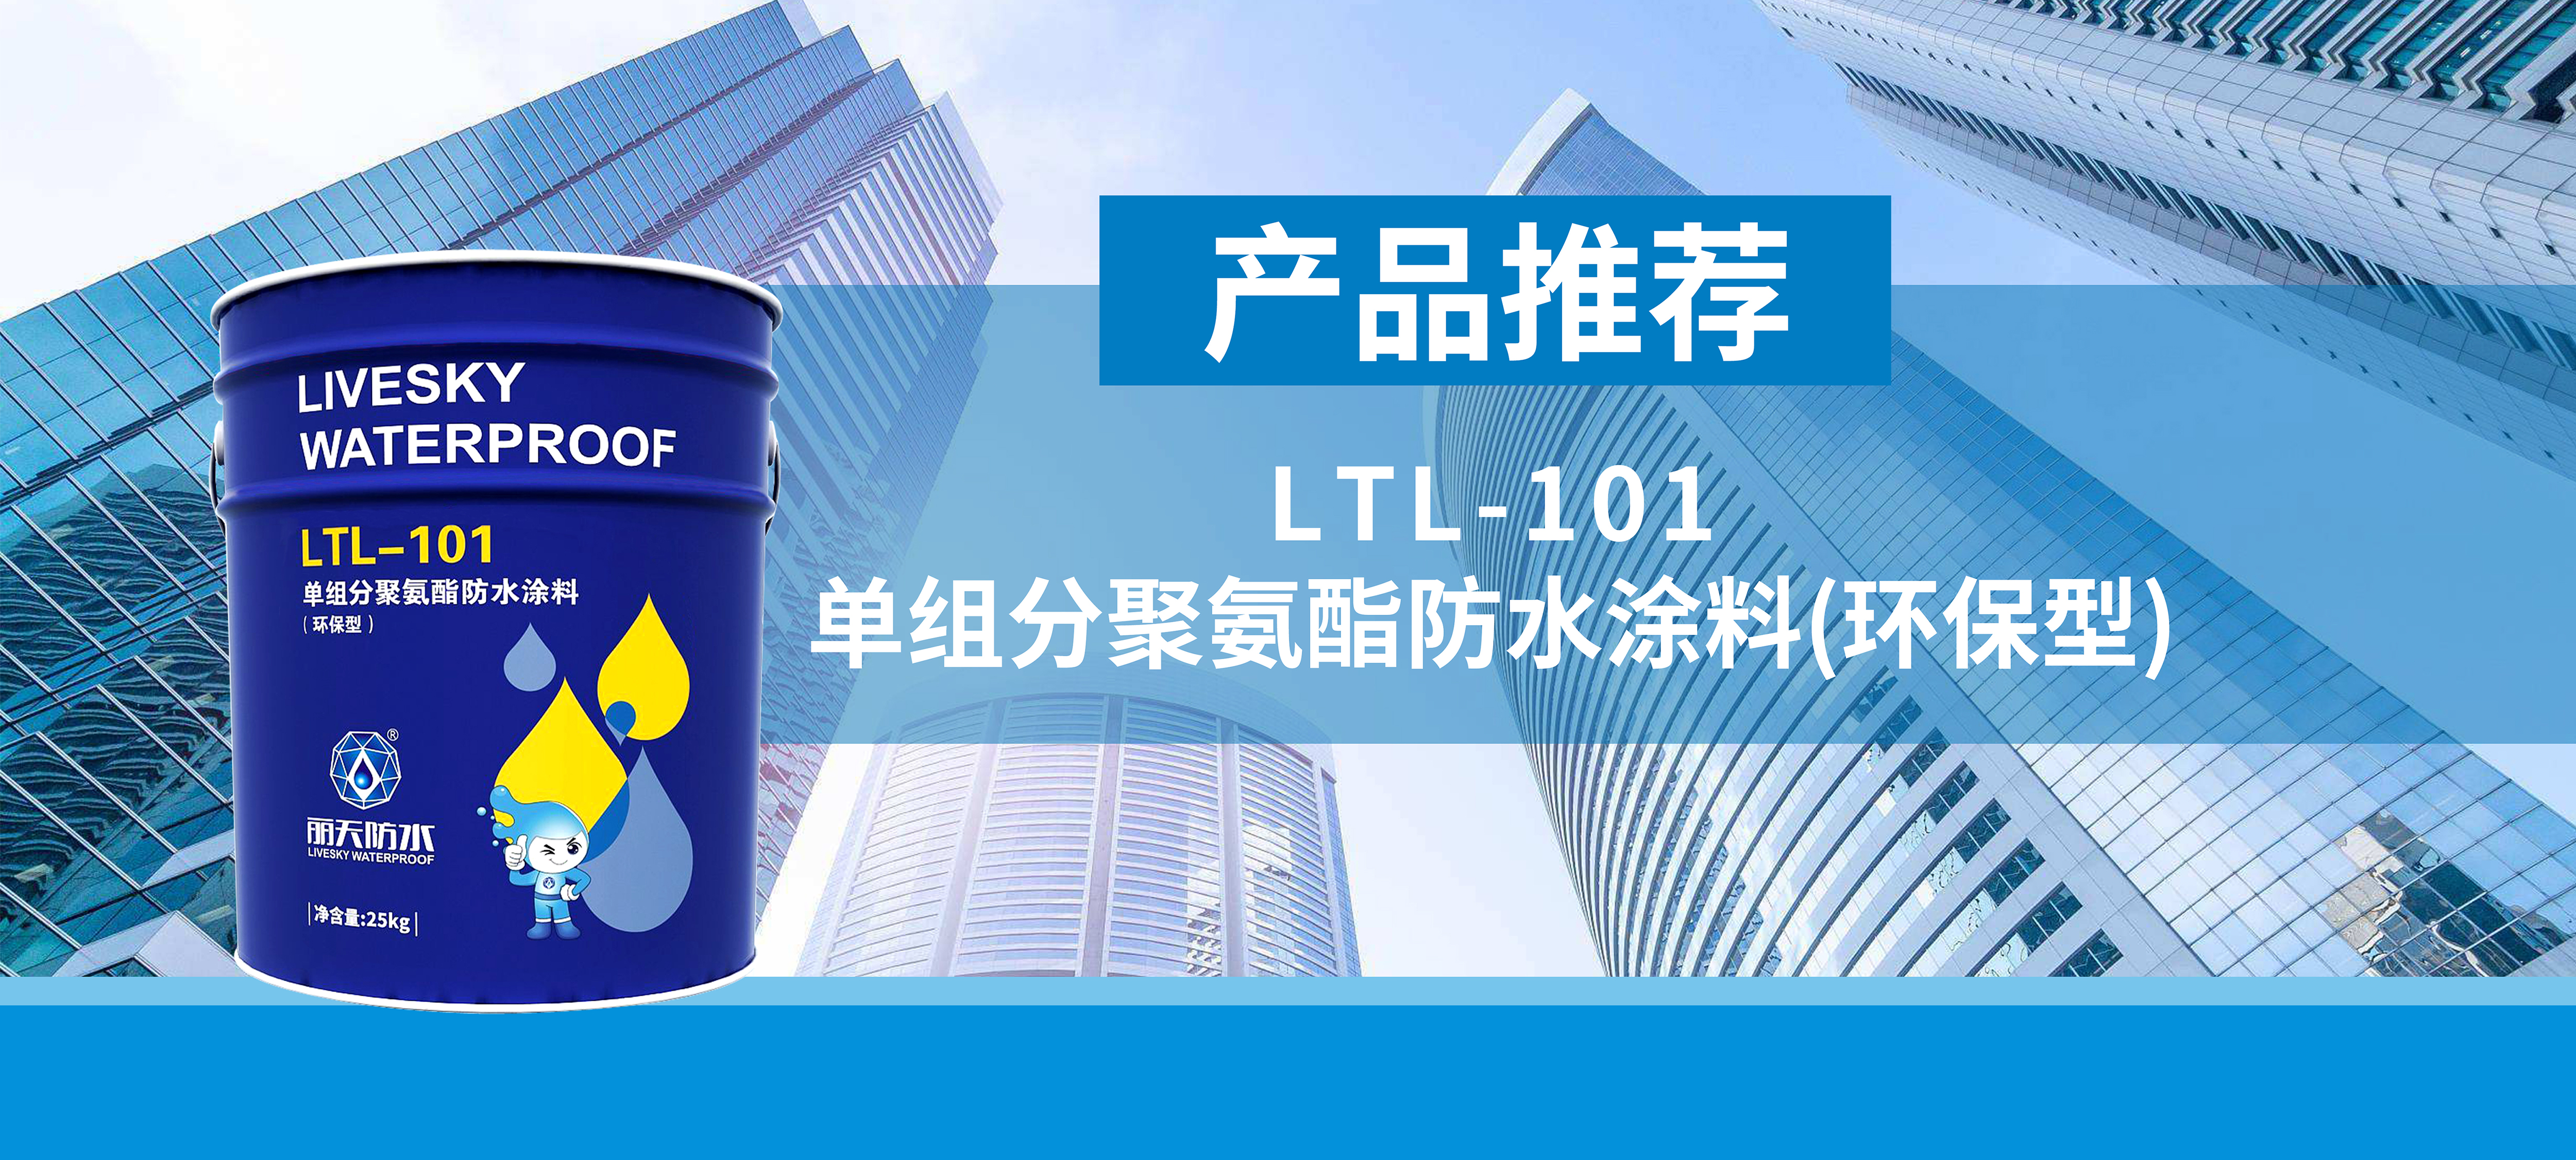 产品推荐｜丽天LTL-101 单组分聚氨酯防水涂料(环保型) 